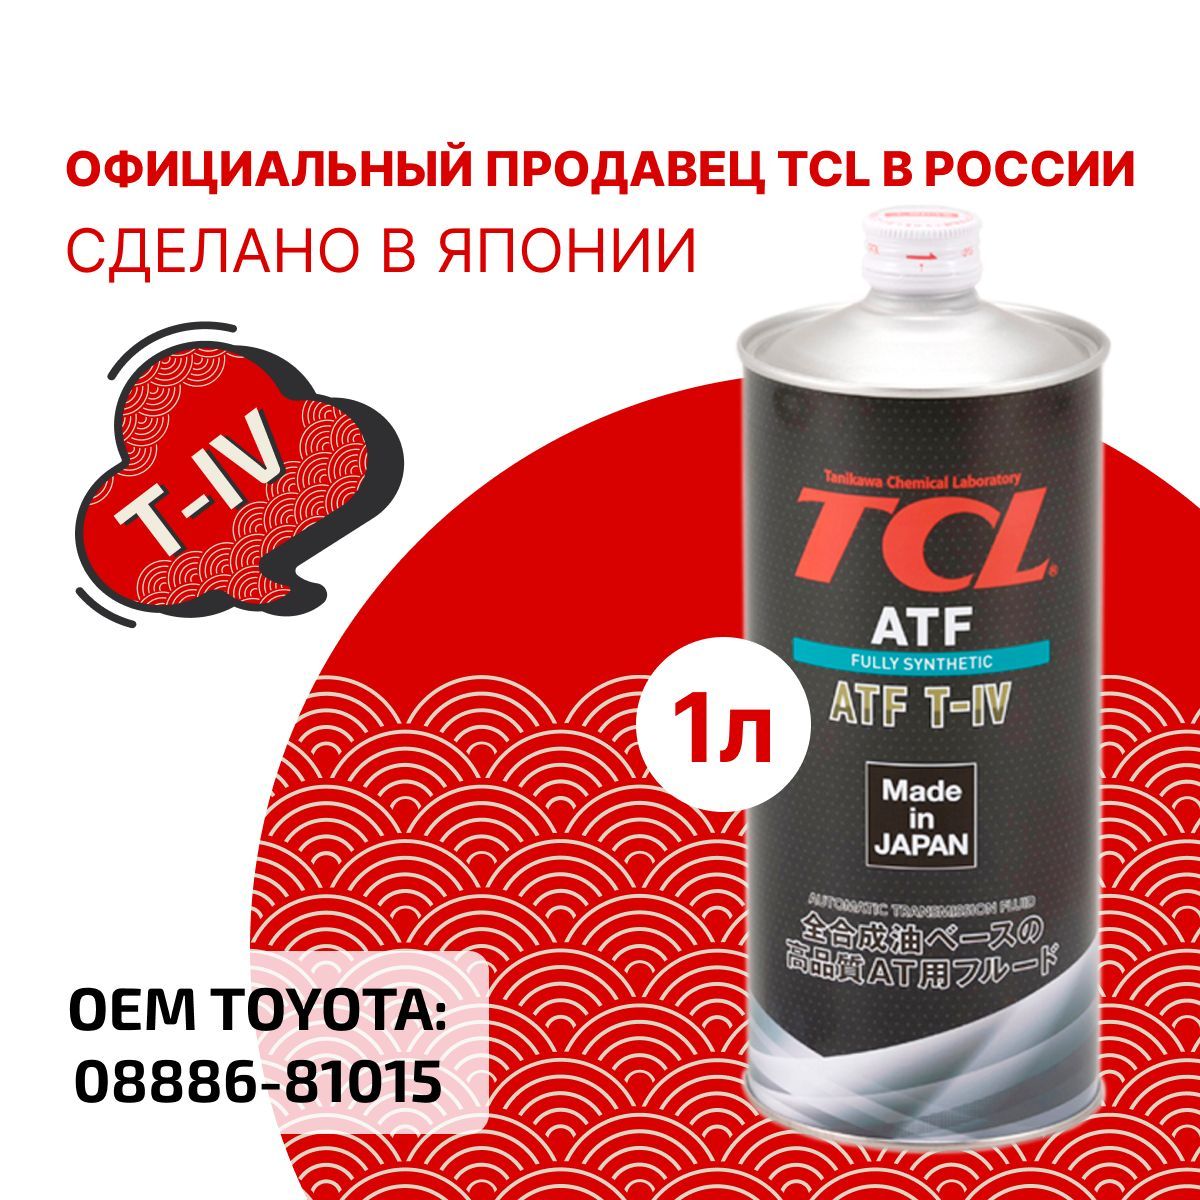 Tcl atf. TCL для АКПП В железной круглой банке.